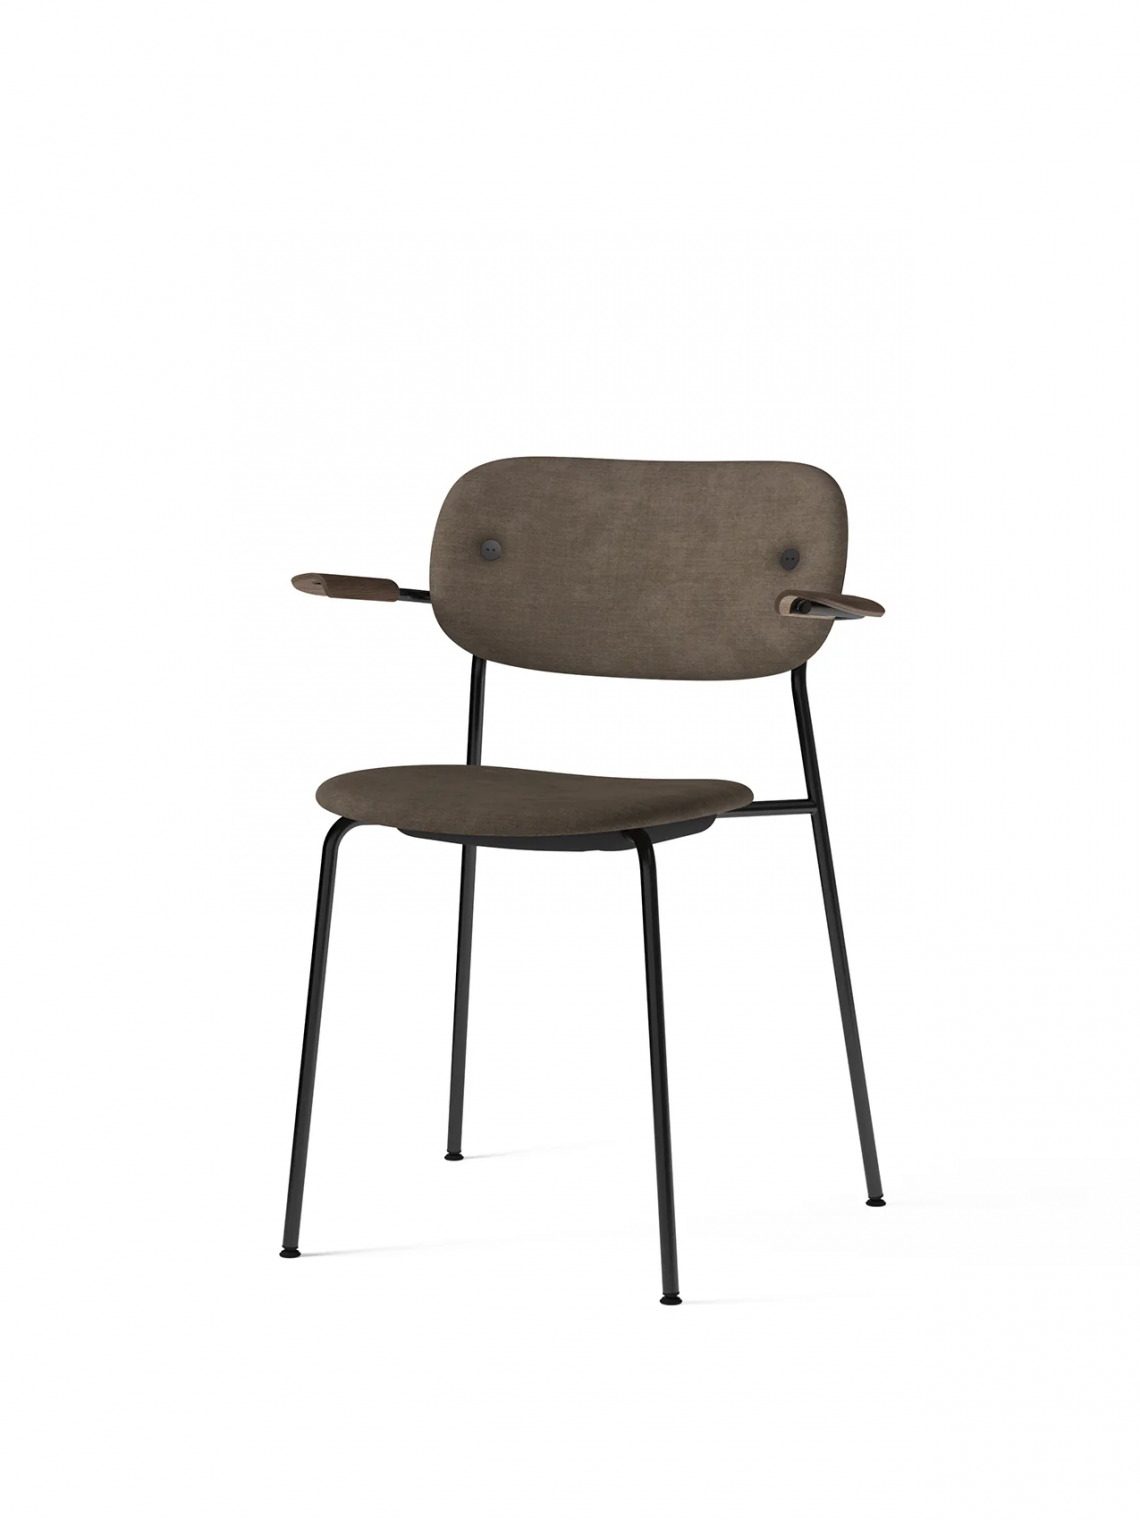 Co with armrest, Black, Veneer餐椅细节图1